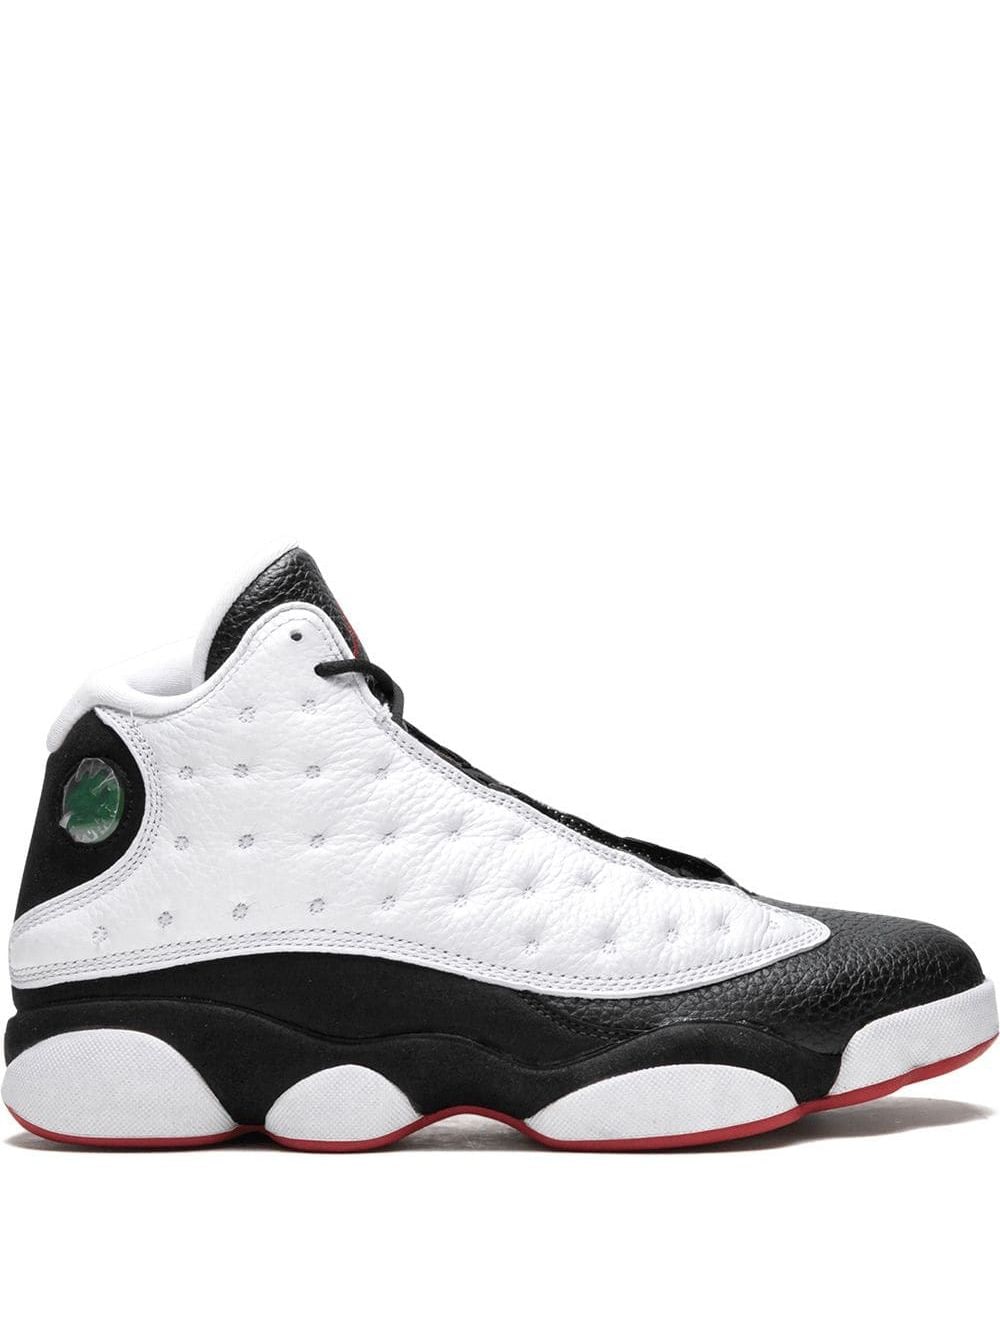 Jordan Air Jordan 13 "He Got Game" sneakers - White